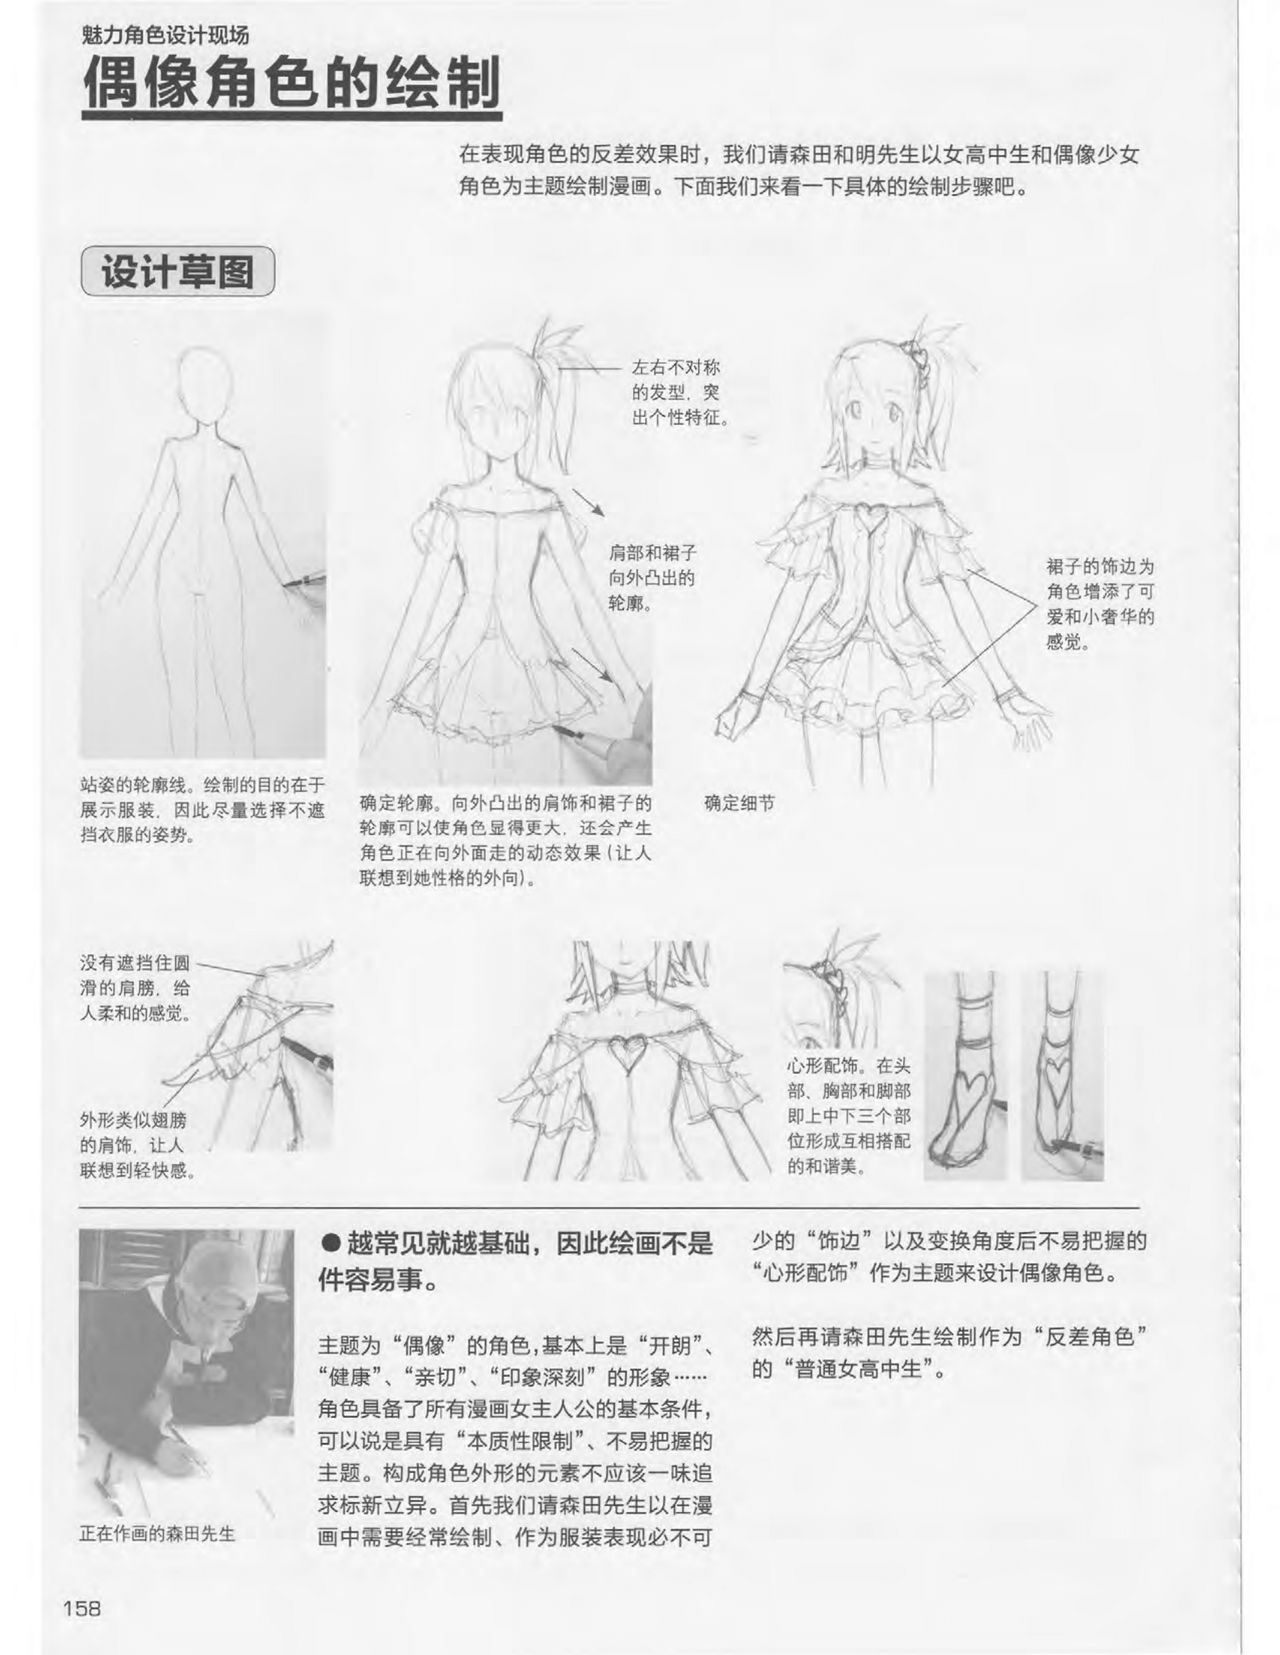 Japanese Manga Master Lecture 3: Lin Akira and Kakumaru Maru Talk About Glamorous Character Modeling 157